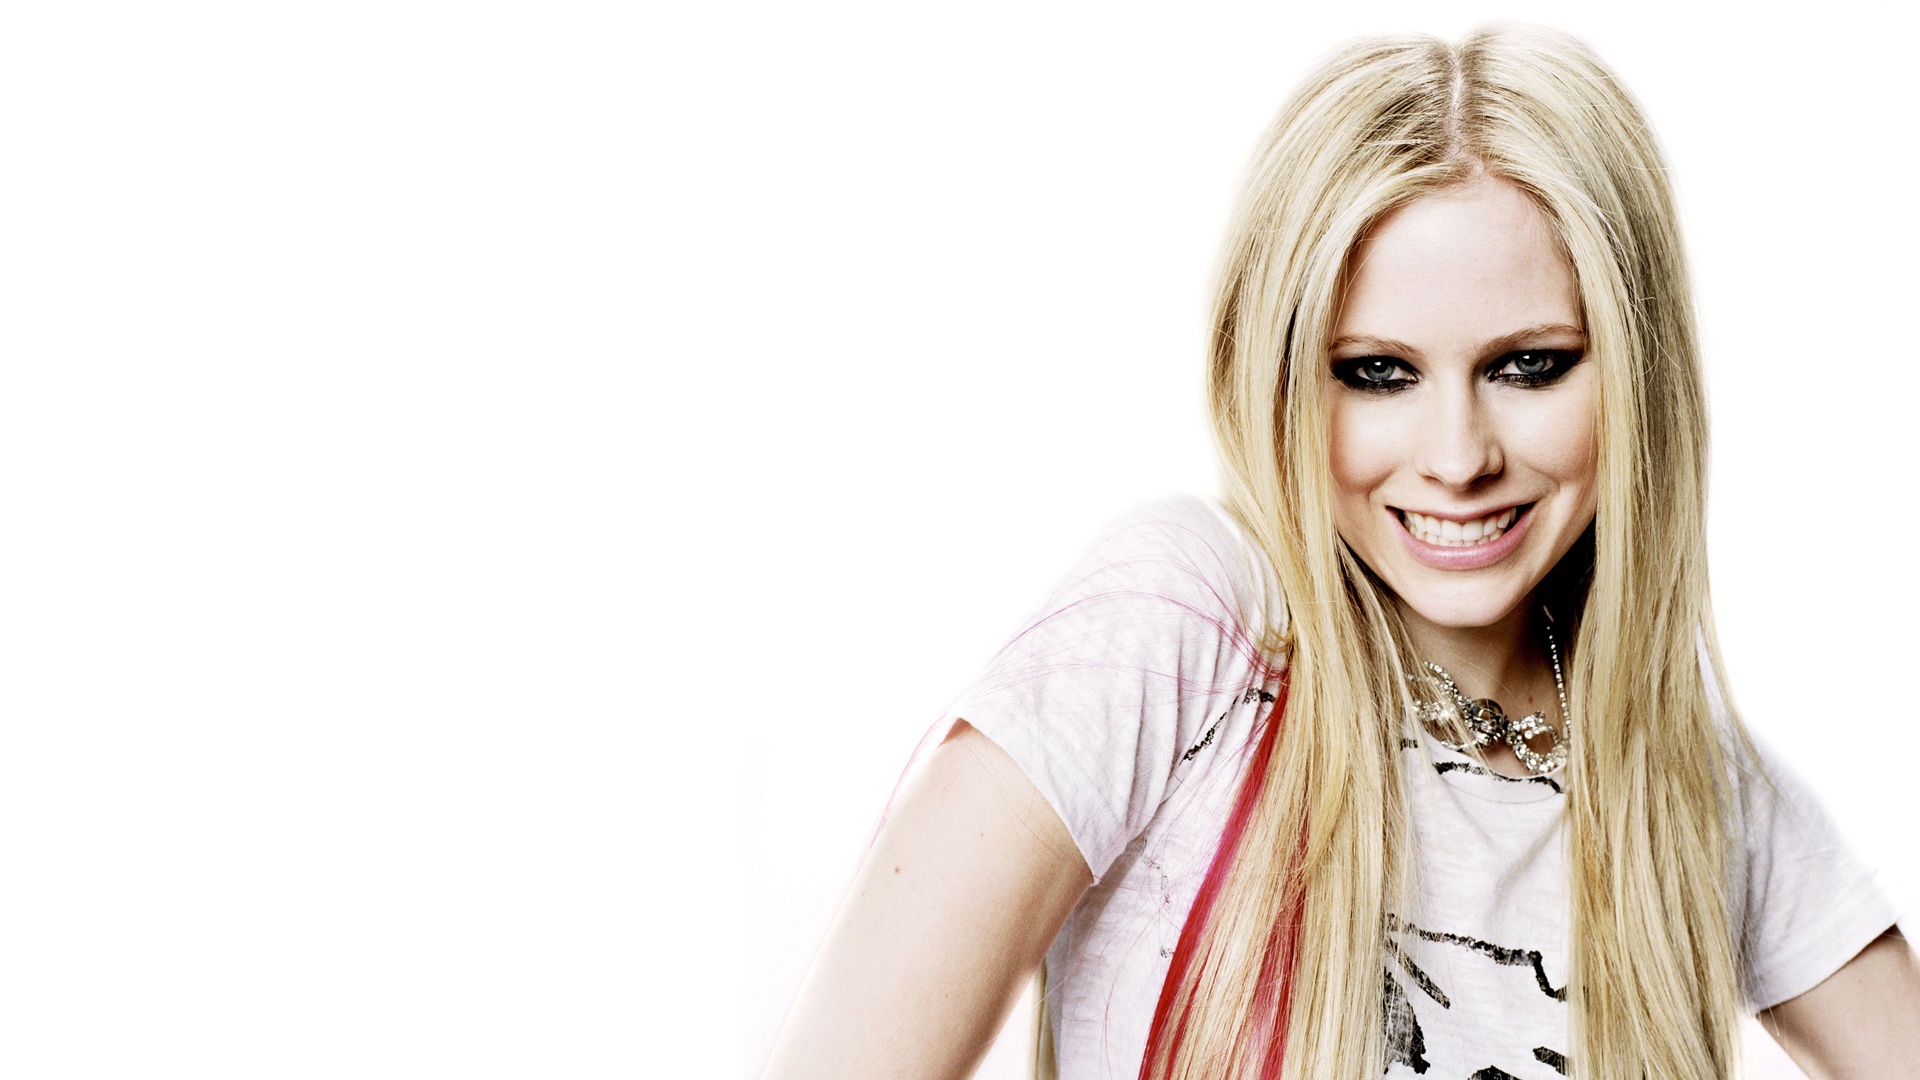 Avril Lavigne Wallpaper Musica Resoluci N